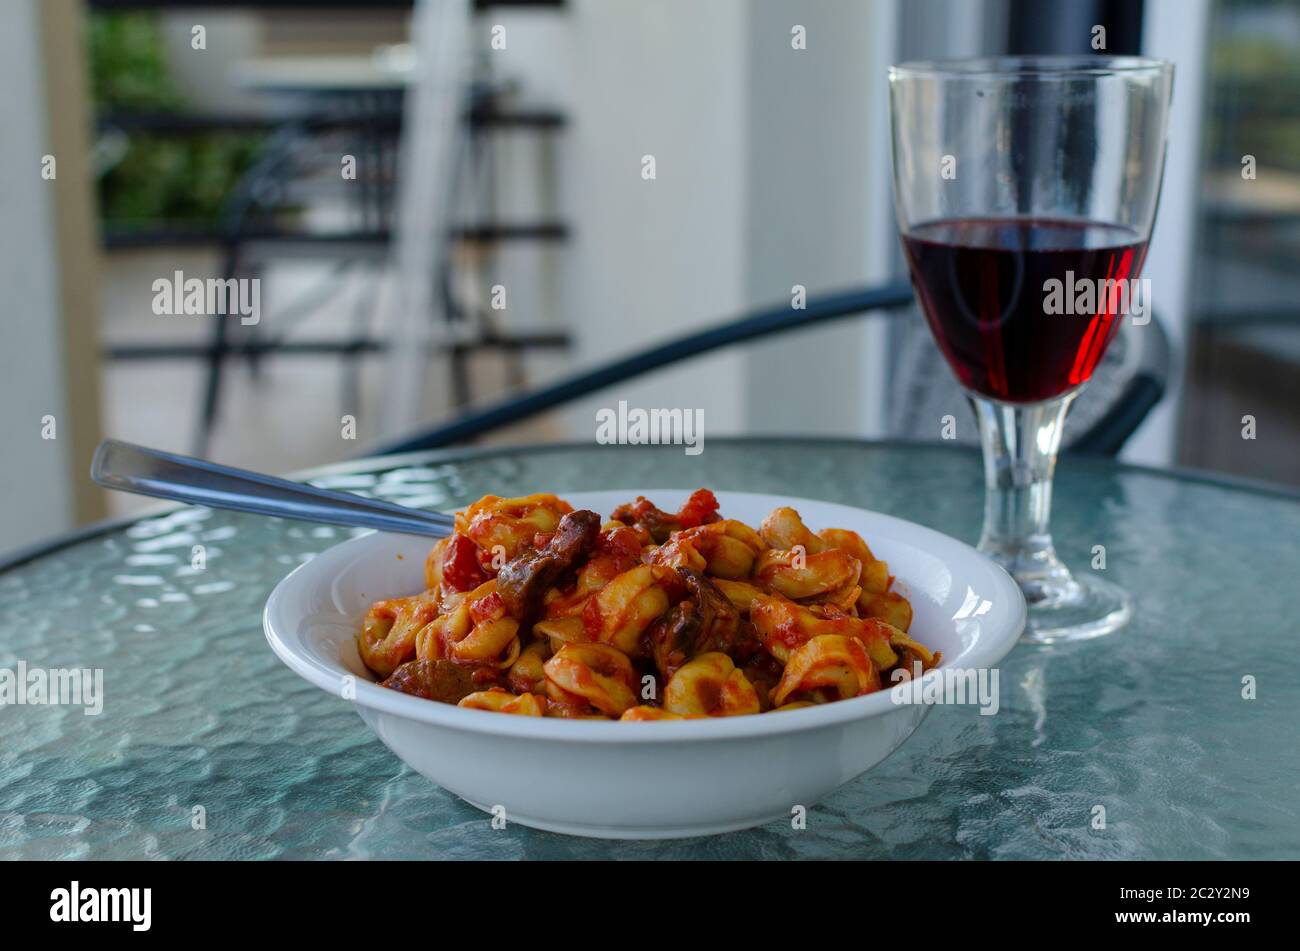 Nahaufnahme einer weißen Schüssel gefüllter Pasta ( Ravioli ) mit Tomatensauce und Pilzen mit einem Glas Rotwein auf einem Balkon Tisch im Freien Stockfoto